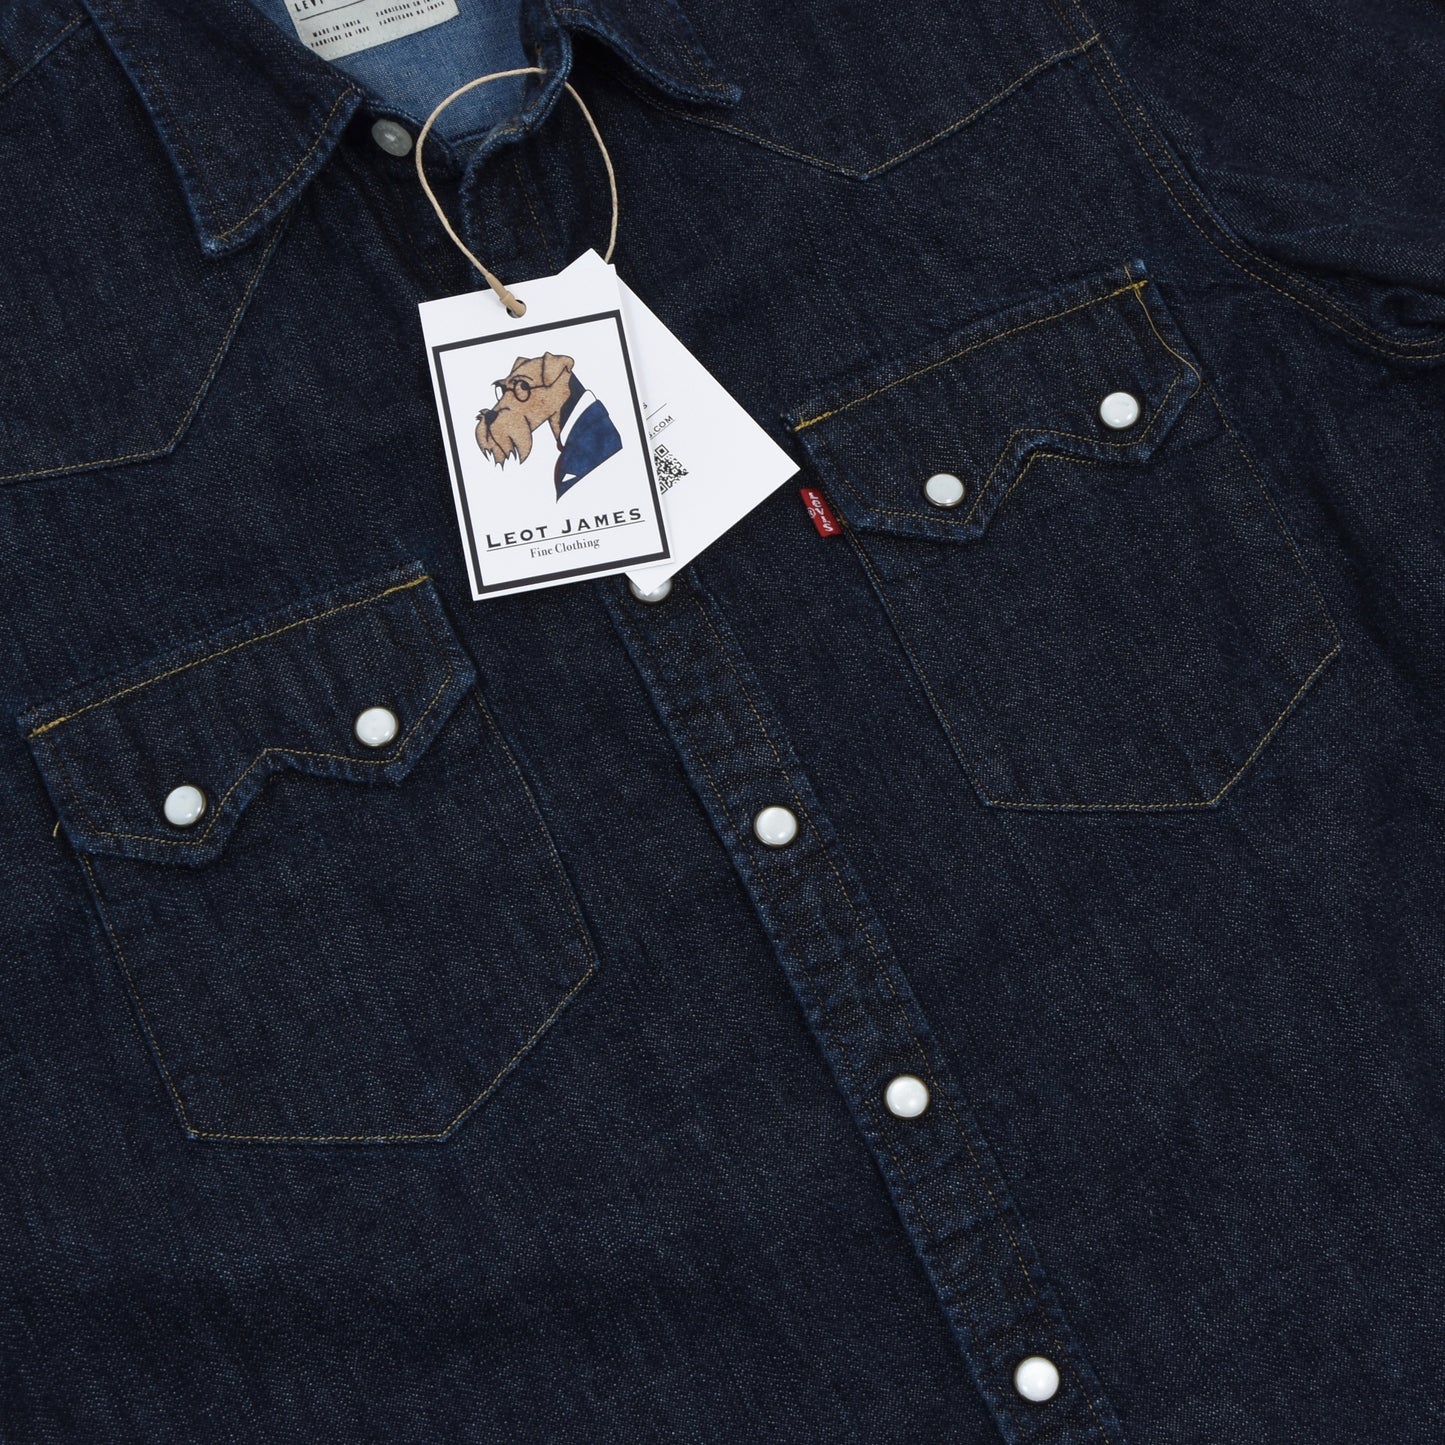 Levi's Classic Denim Snap Shirt Size S Slim Fit - Blue